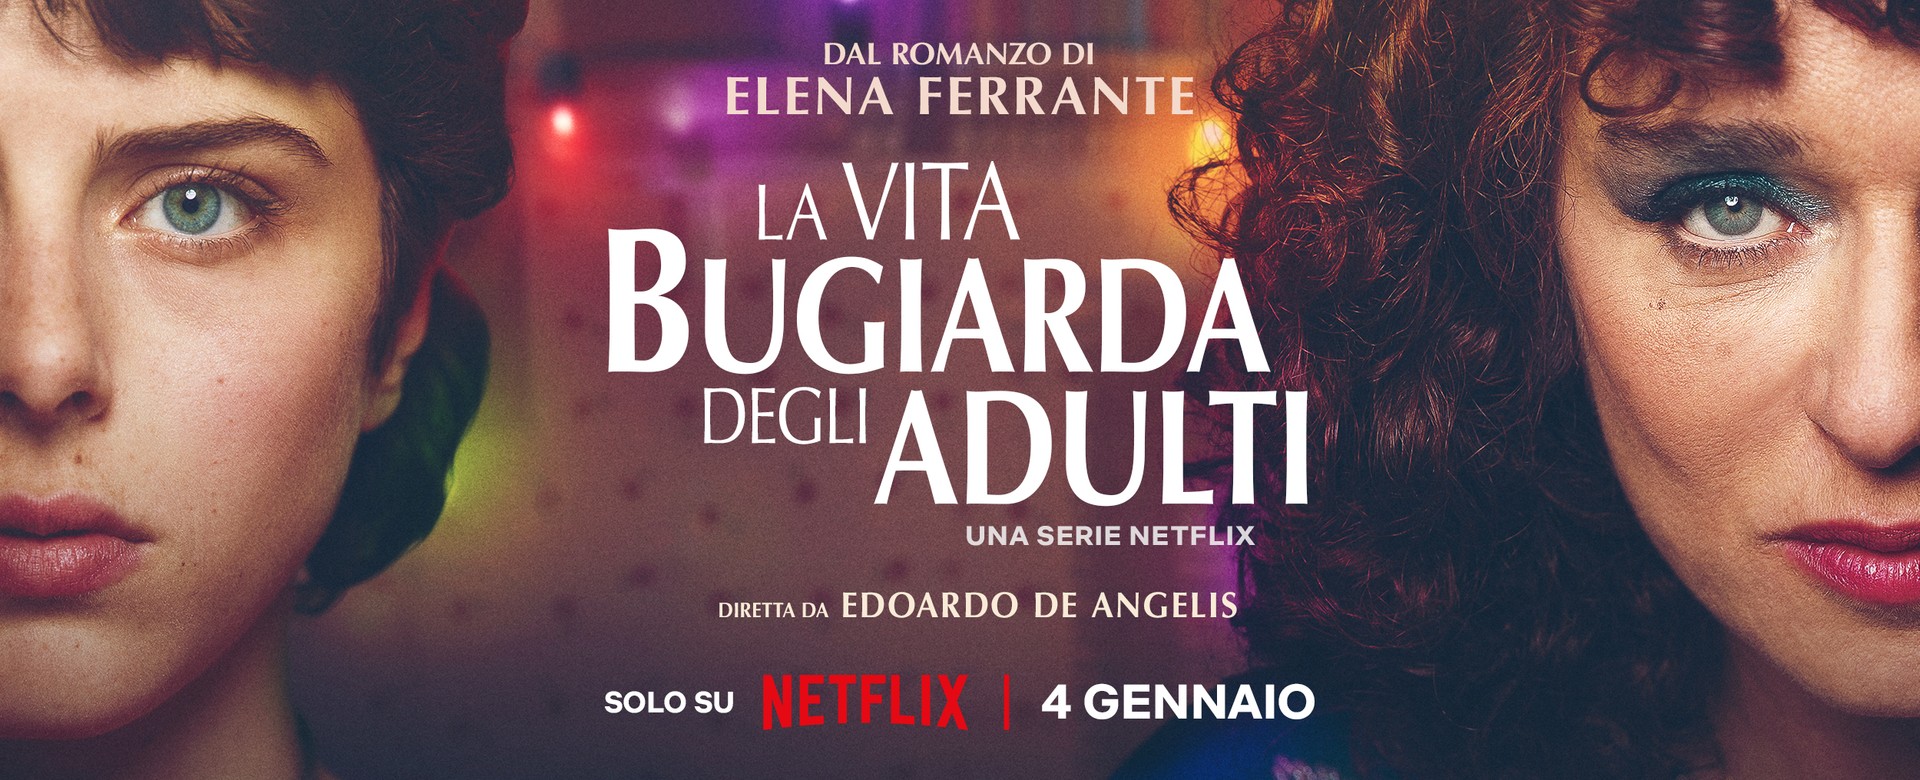 La vita bugiarda degli adulti, la serie Netflix di Fandango debutta a gennaio